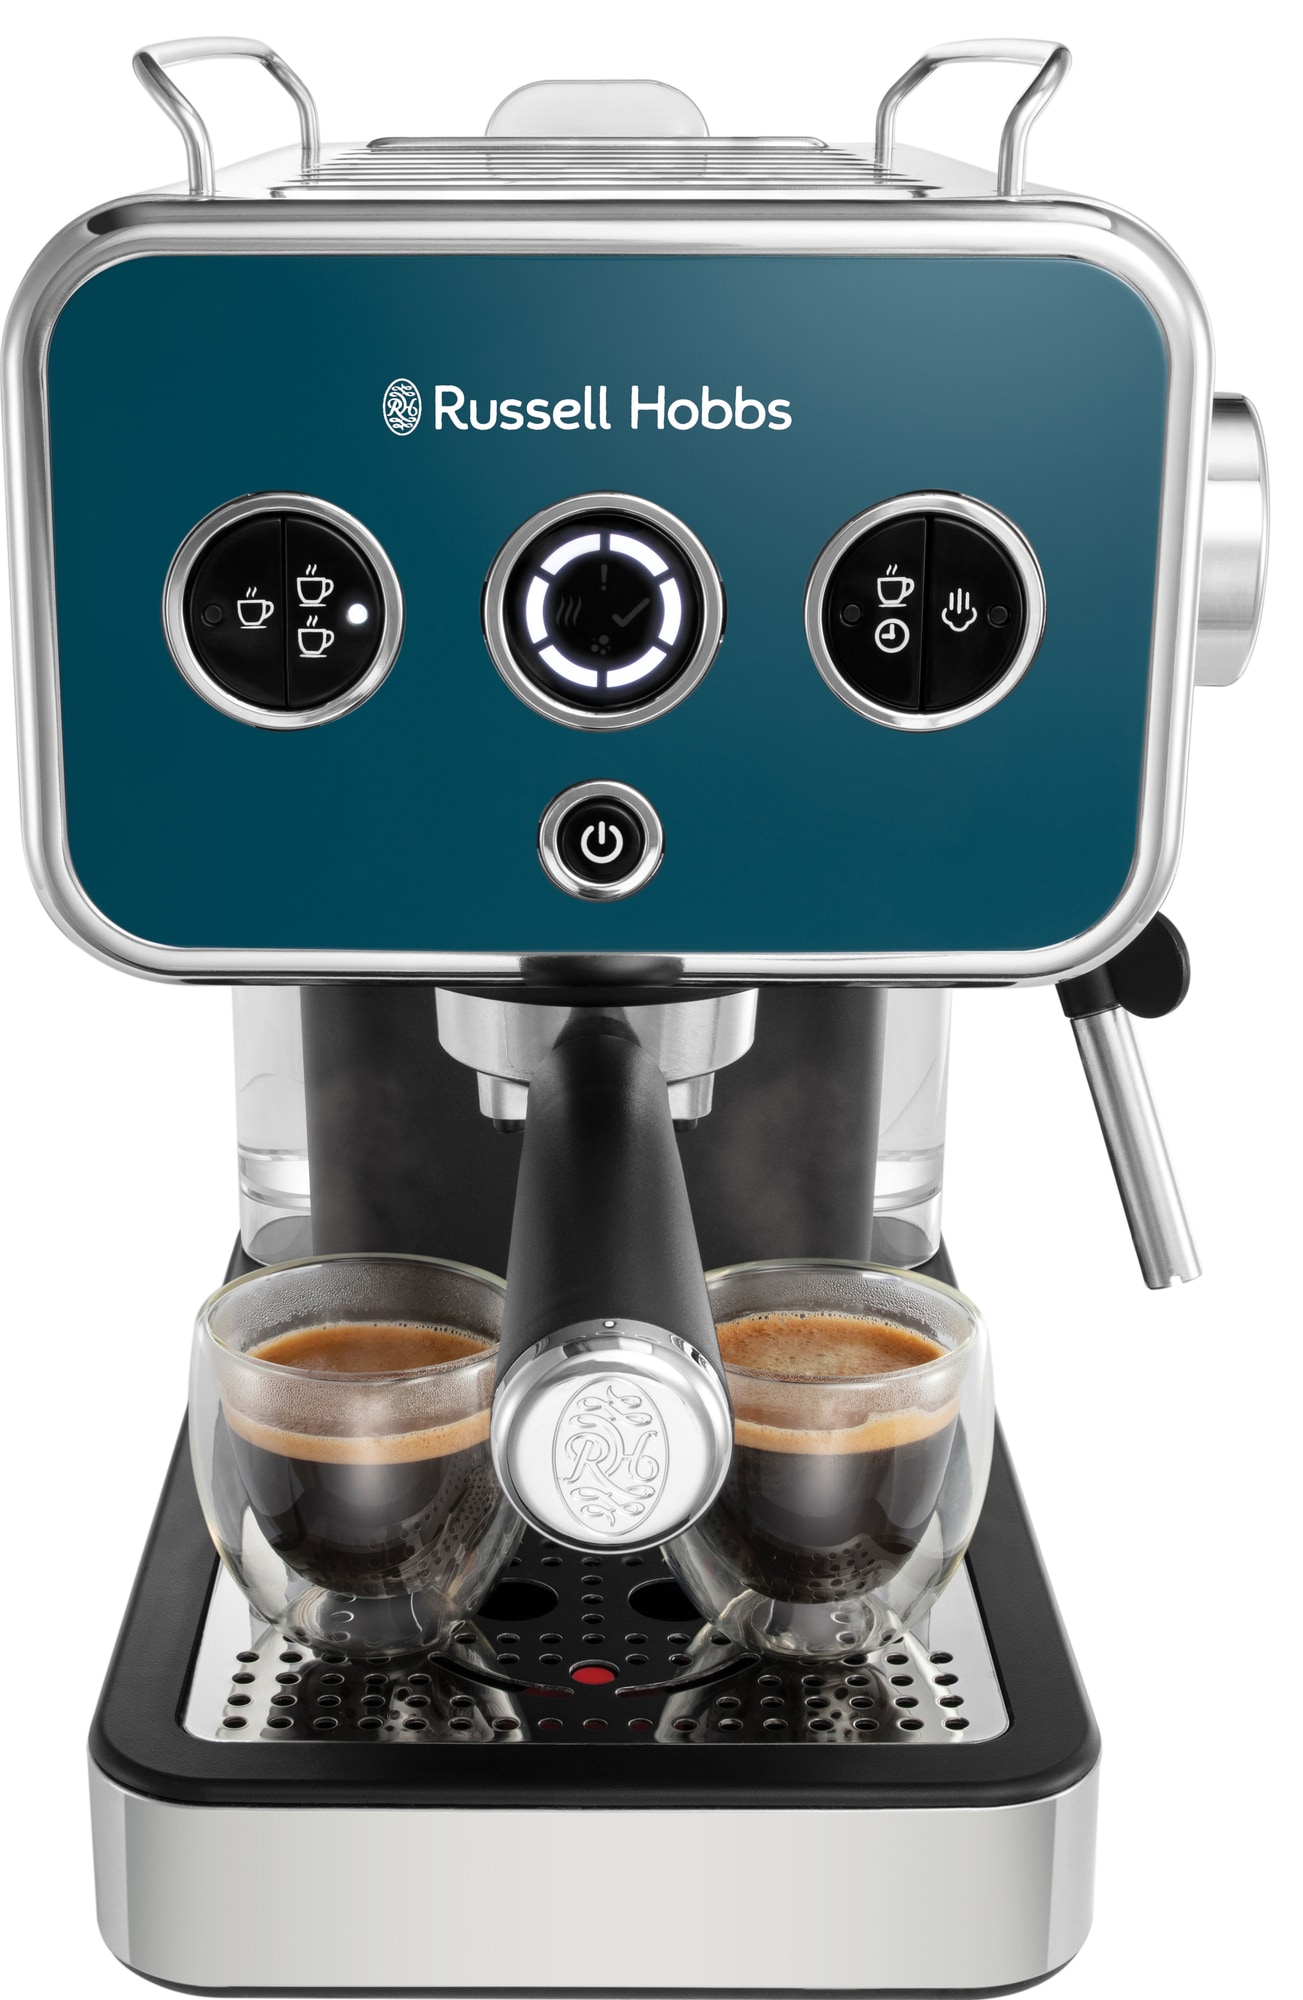 Billede af Russell Hobbs Distinctions espressomaskine 26451-56 (ocean blue)